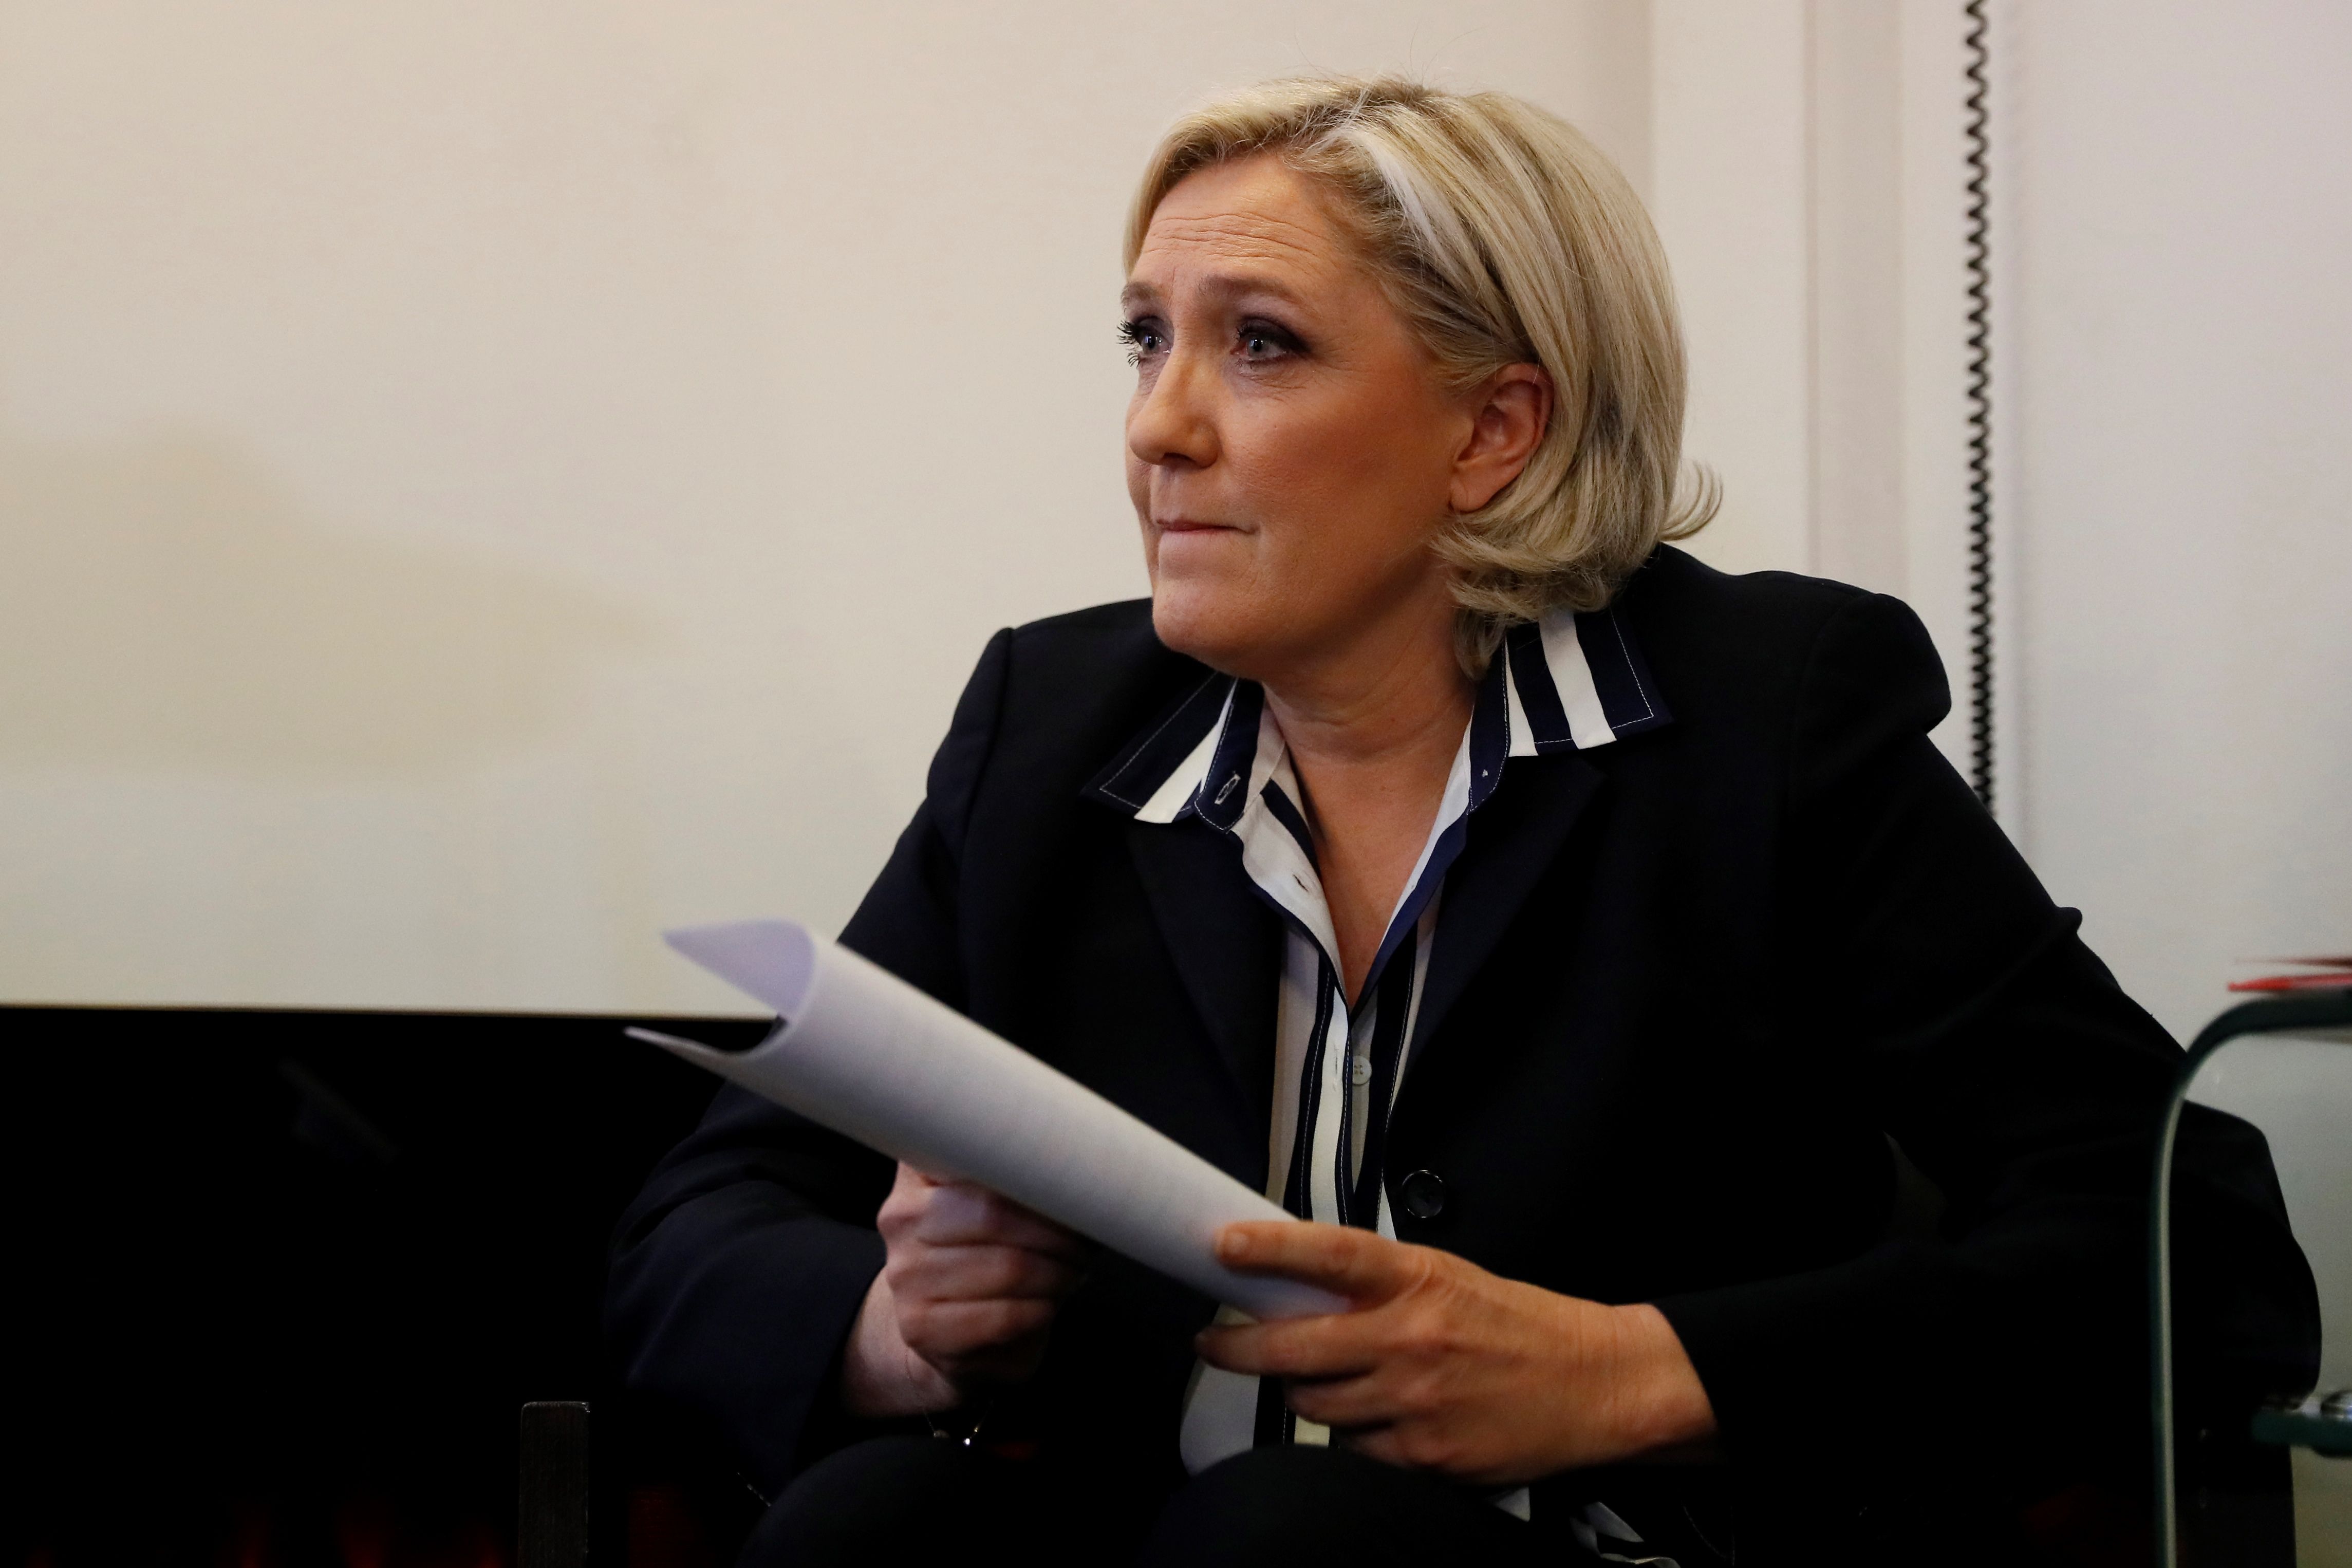 مارين لوبان مرشحة الرئاسة الفرنسية